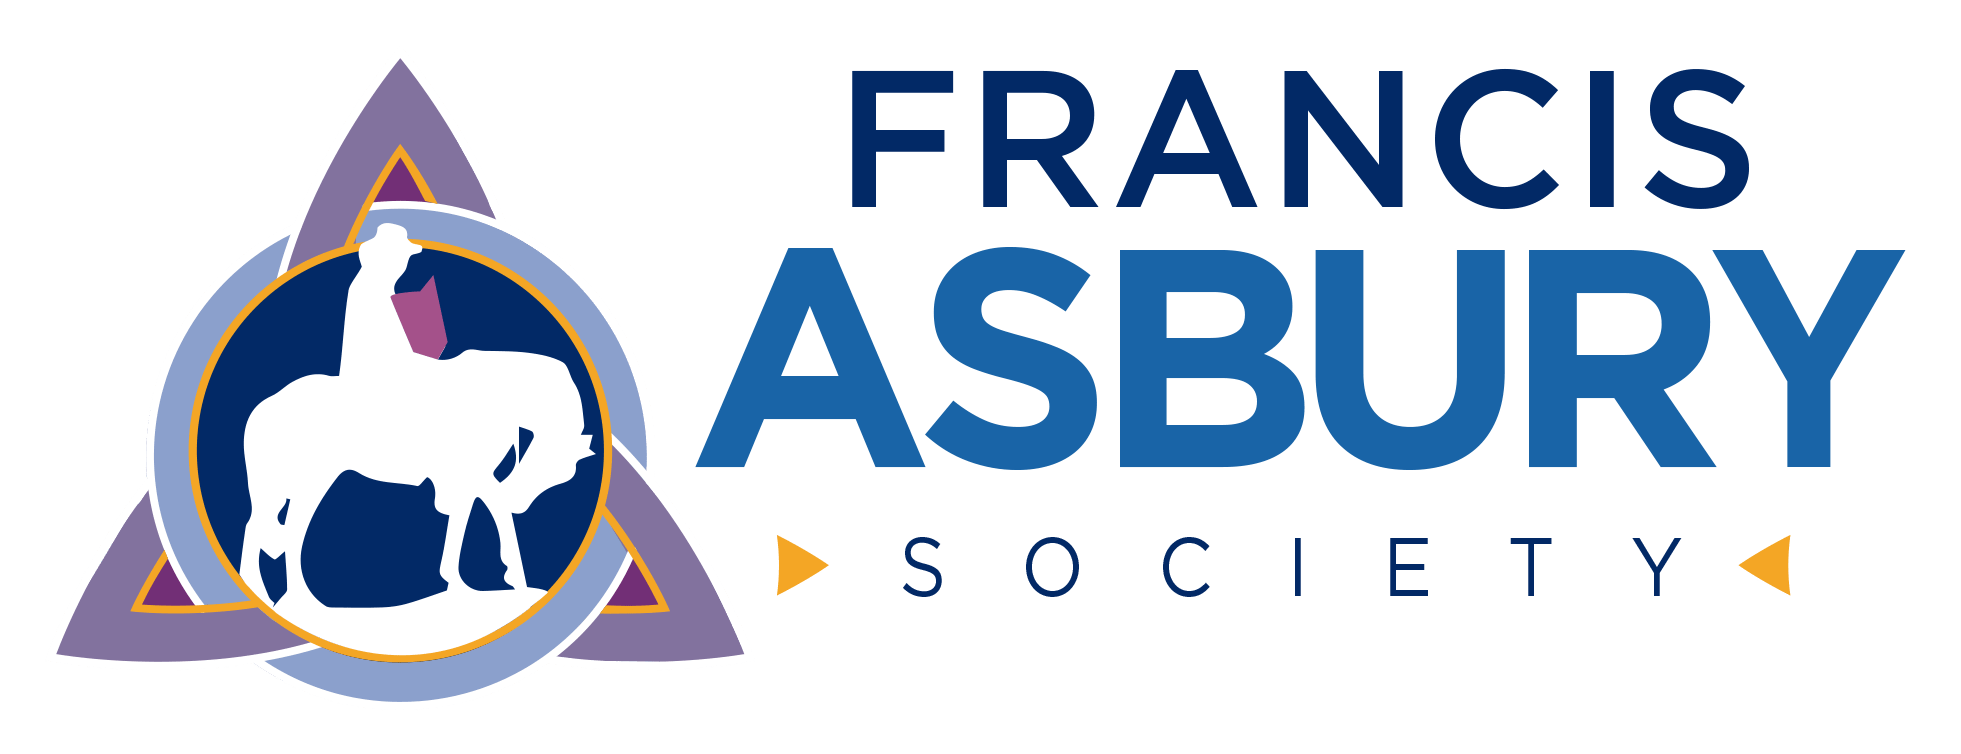 Francis Asbury Society Logotype